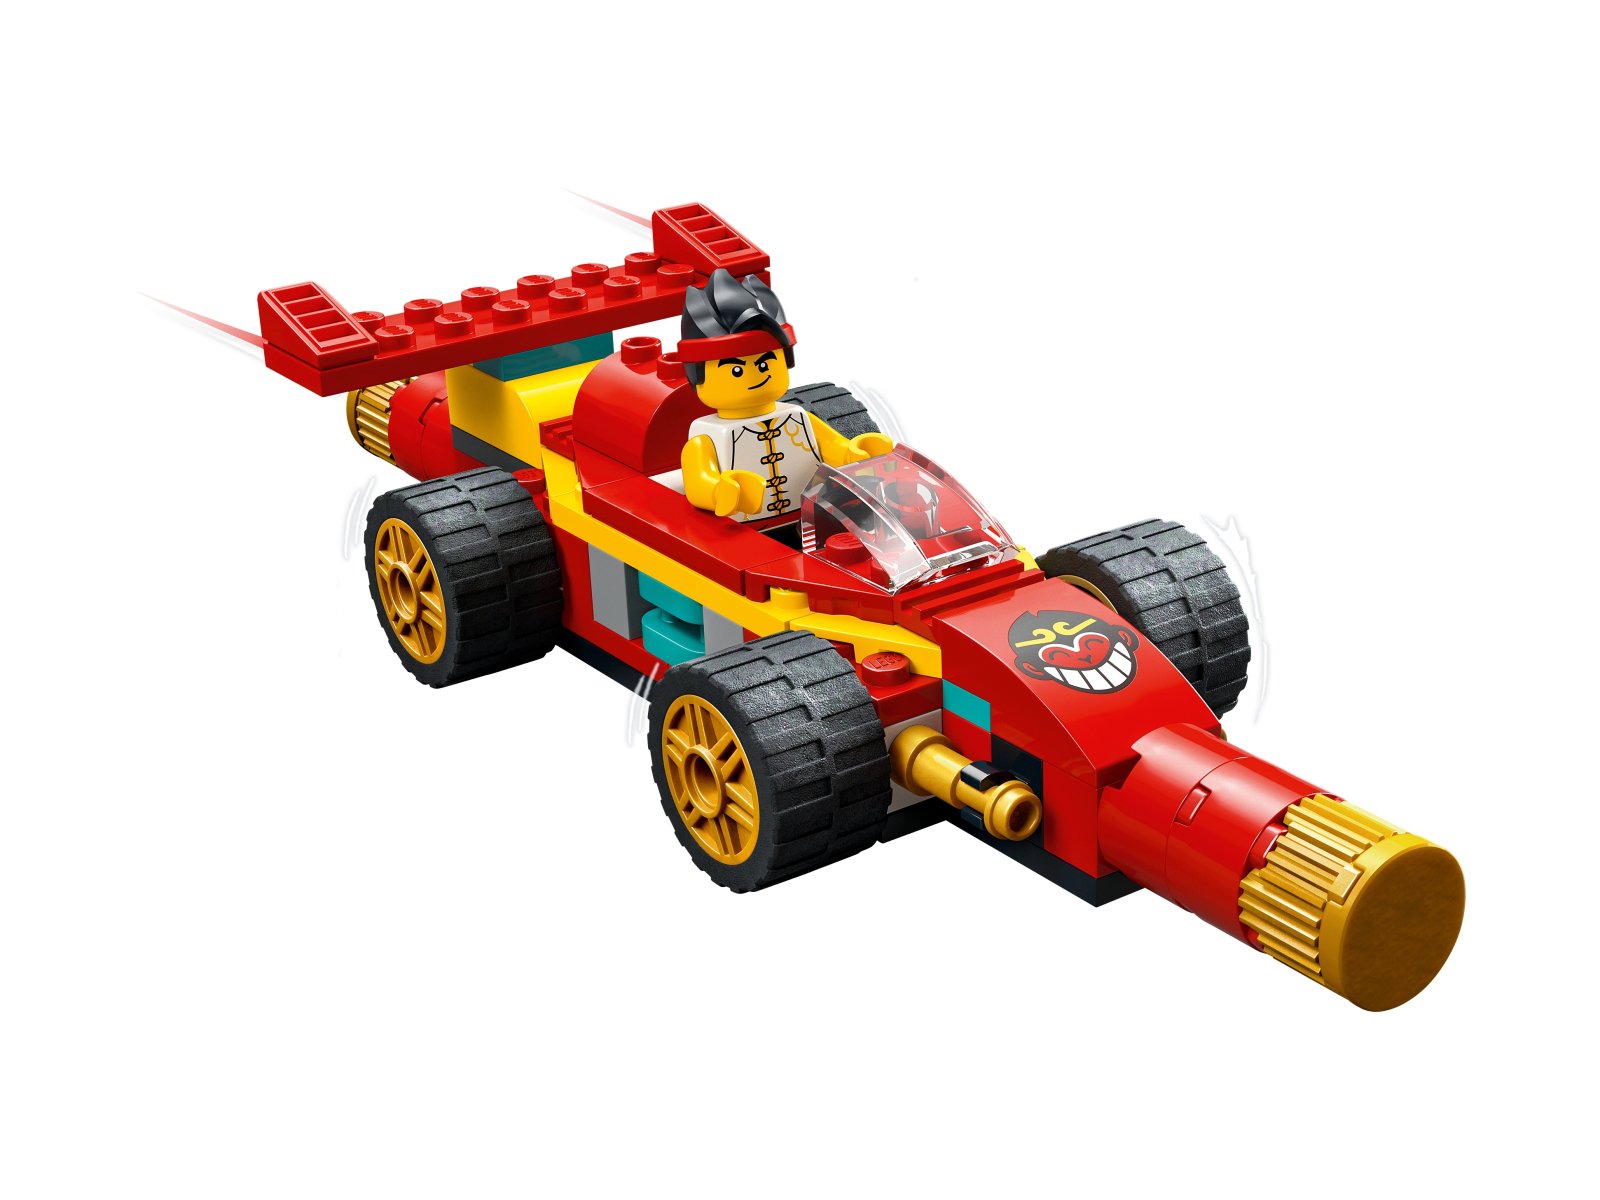 LEGO 80030 Monkie Kid Modele z kosturem Monkie Kida